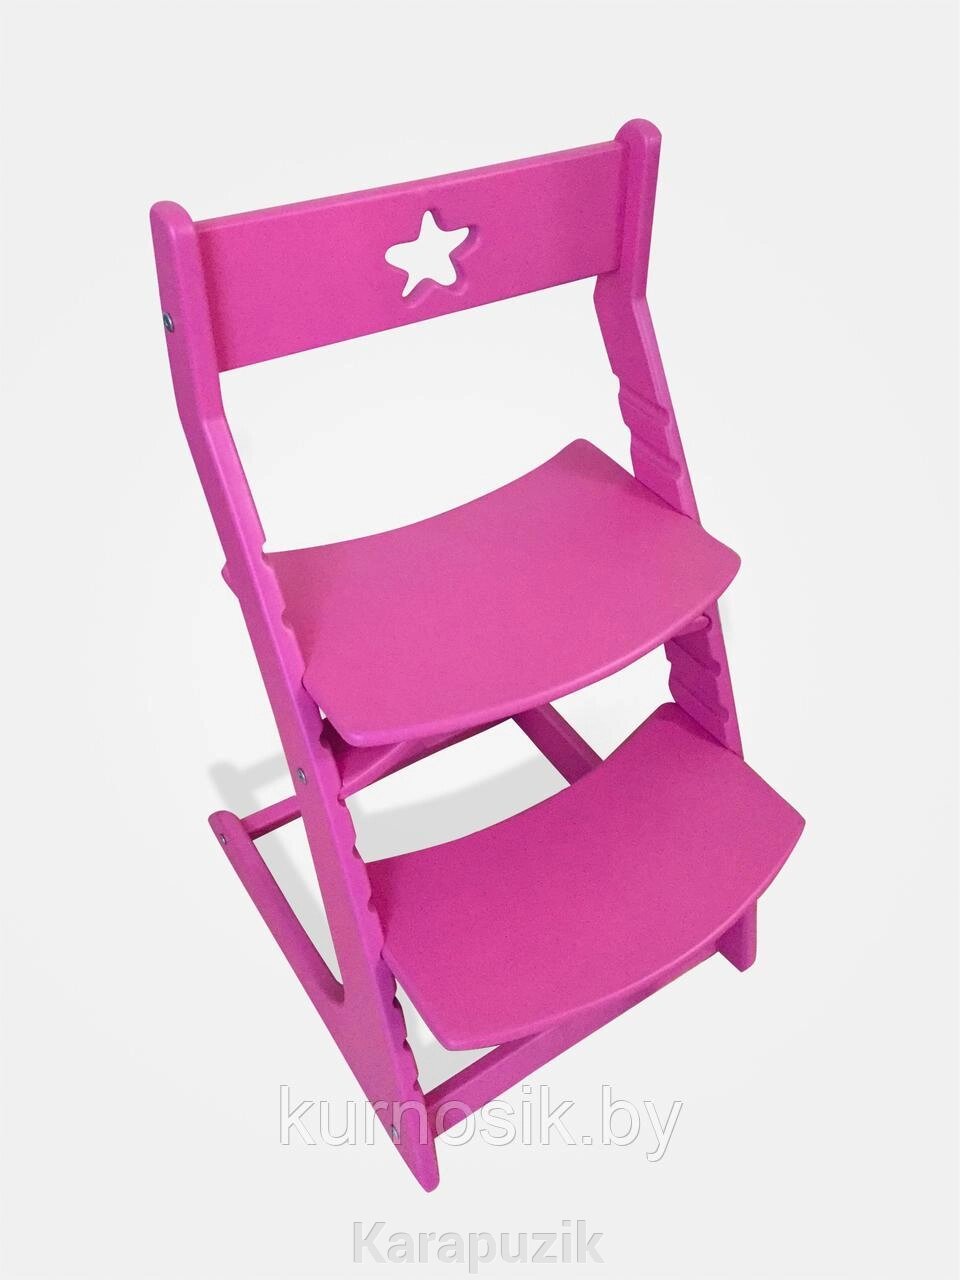 Растущий регулируемый школьный стул Ростик Rostik Розовый СП1 от компании Karapuzik - фото 1